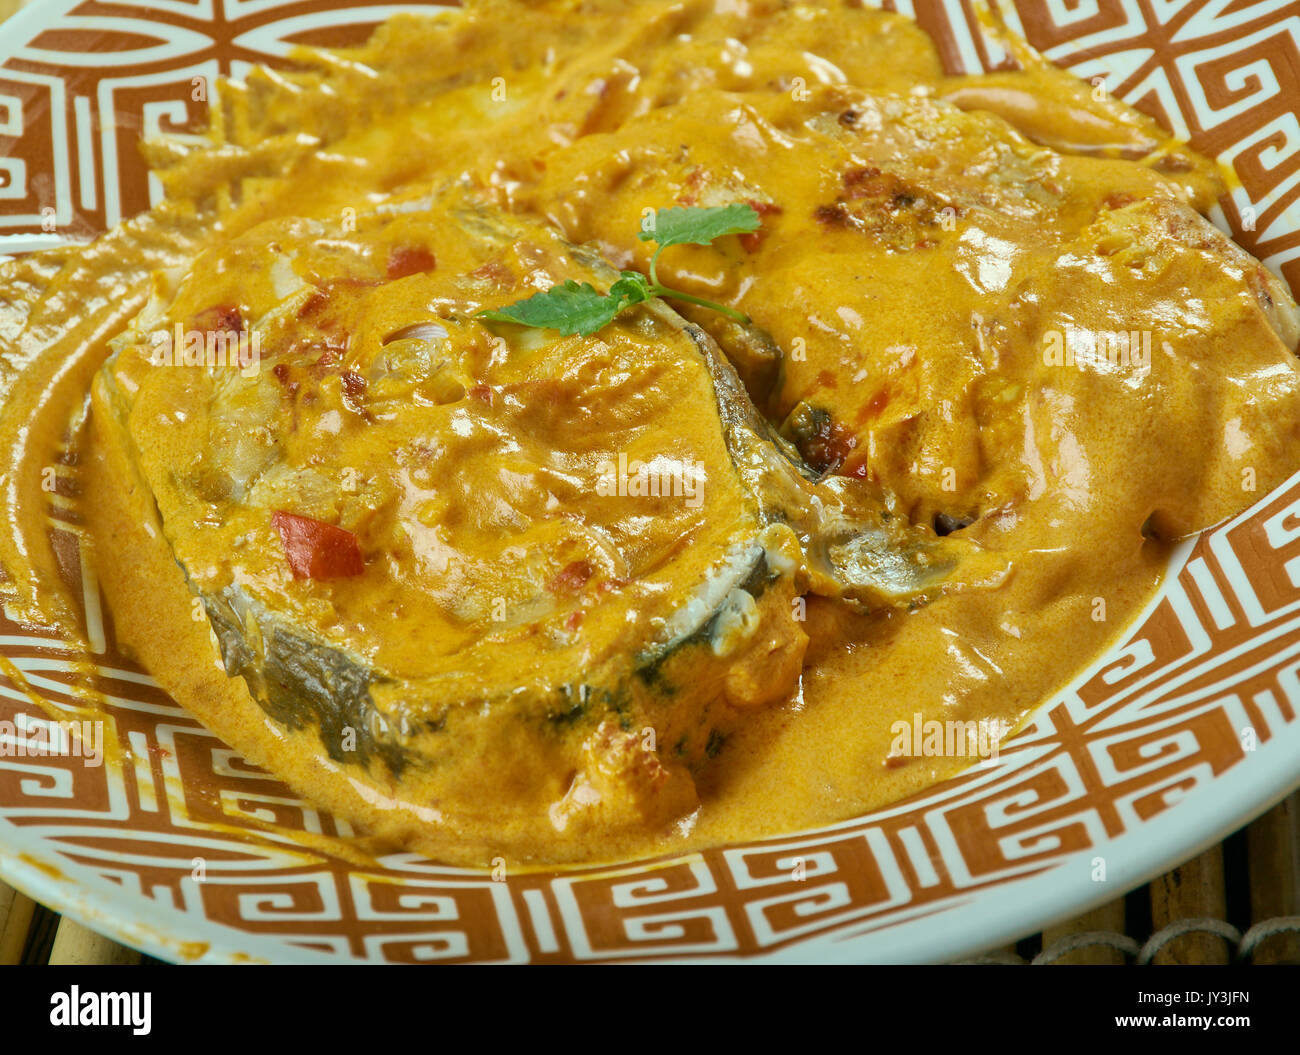 Senape in Bengali pesce al curry. Pesce cotto con masala in olio di senape i gusti. Foto Stock